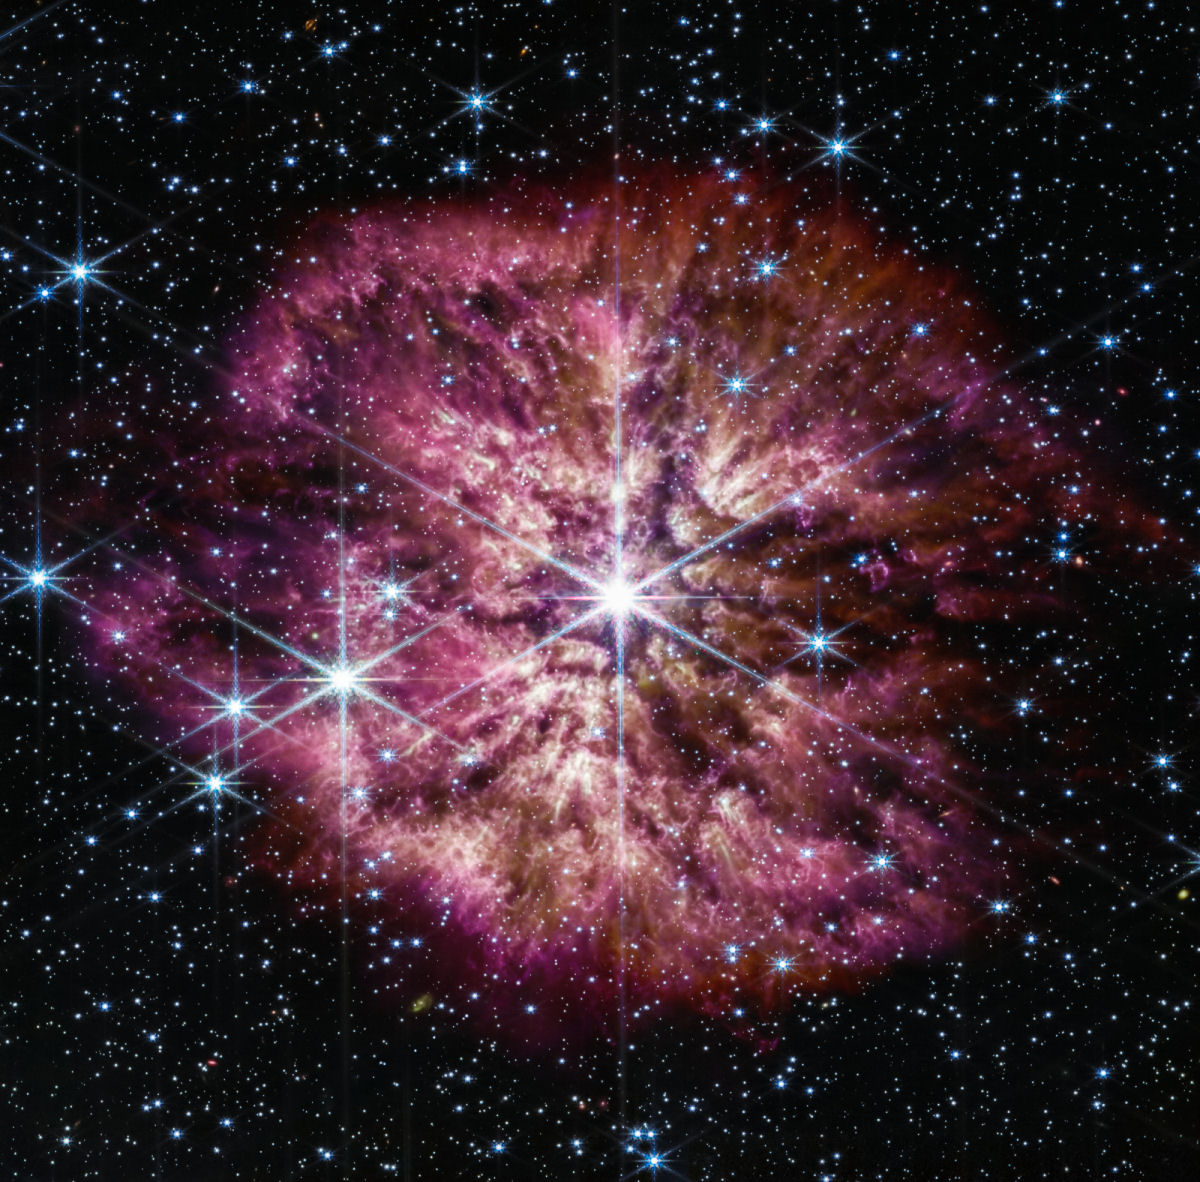 Veja a rara nova imagem do Telescpio James Webb de uma estrela moribunda